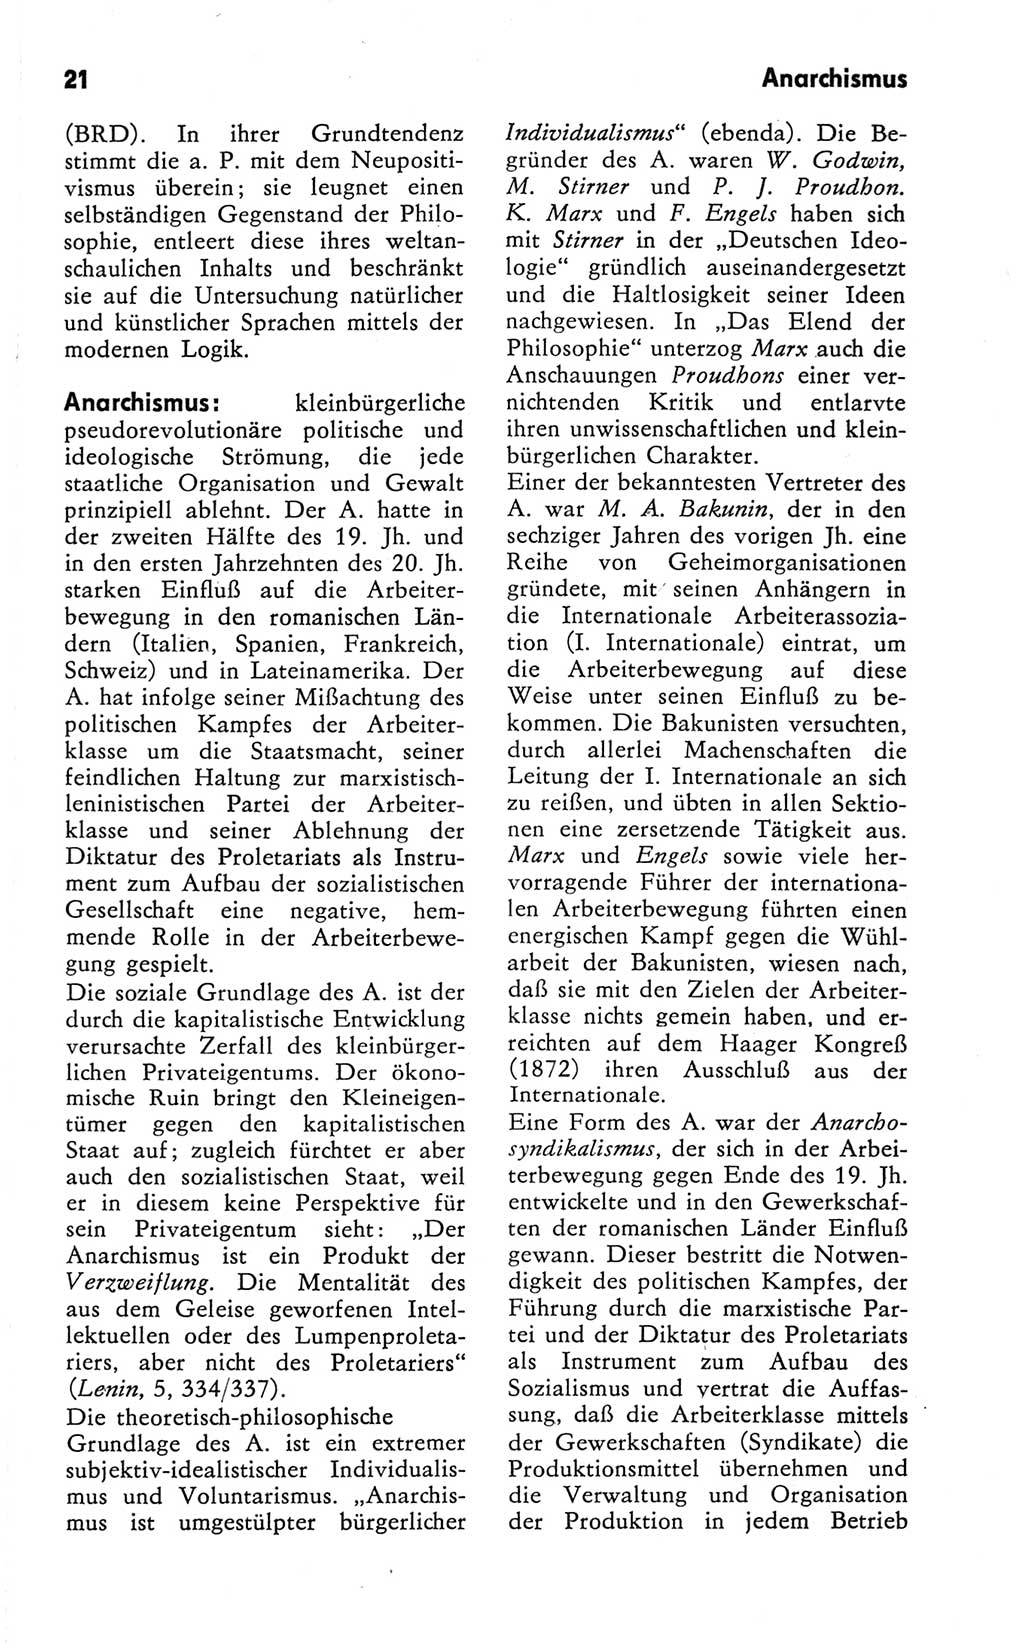 Kleines Wörterbuch der marxistisch-leninistischen Philosophie [Deutsche Demokratische Republik (DDR)] 1981, Seite 21 (Kl. Wb. ML Phil. DDR 1981, S. 21)